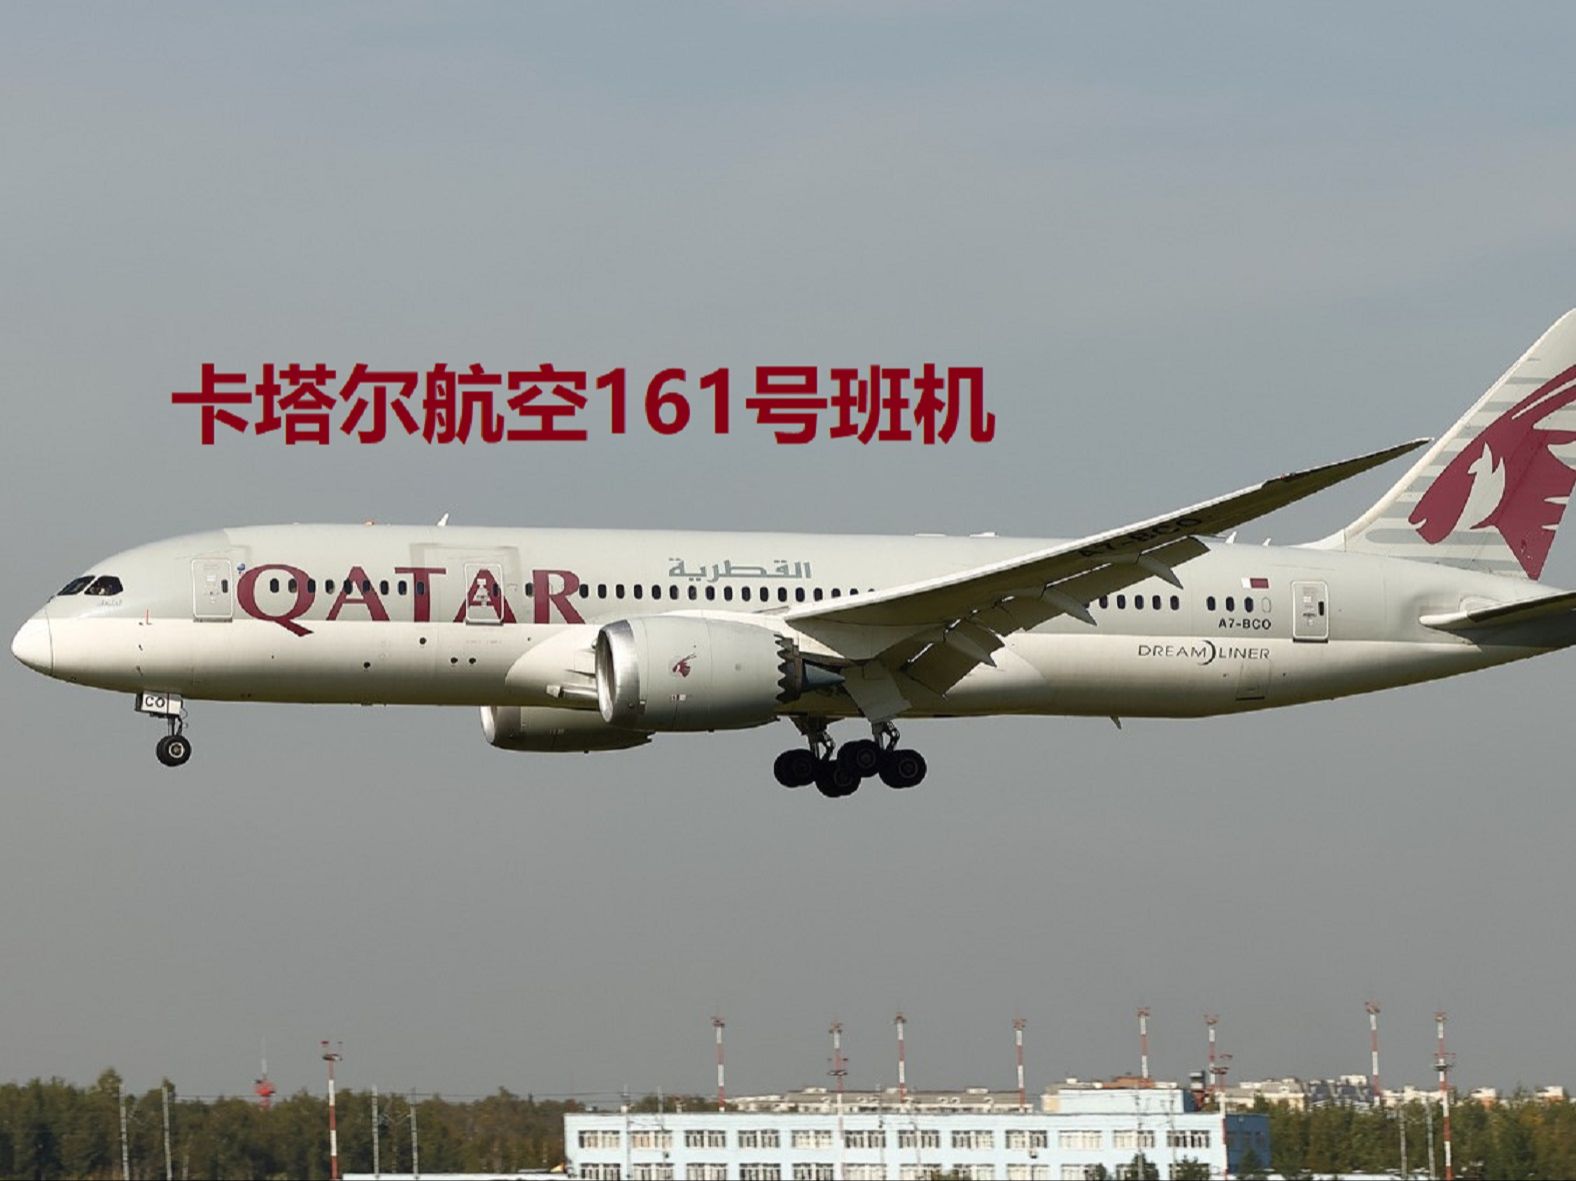 【事故模拟·中文字幕】卡塔尔航空161号班机